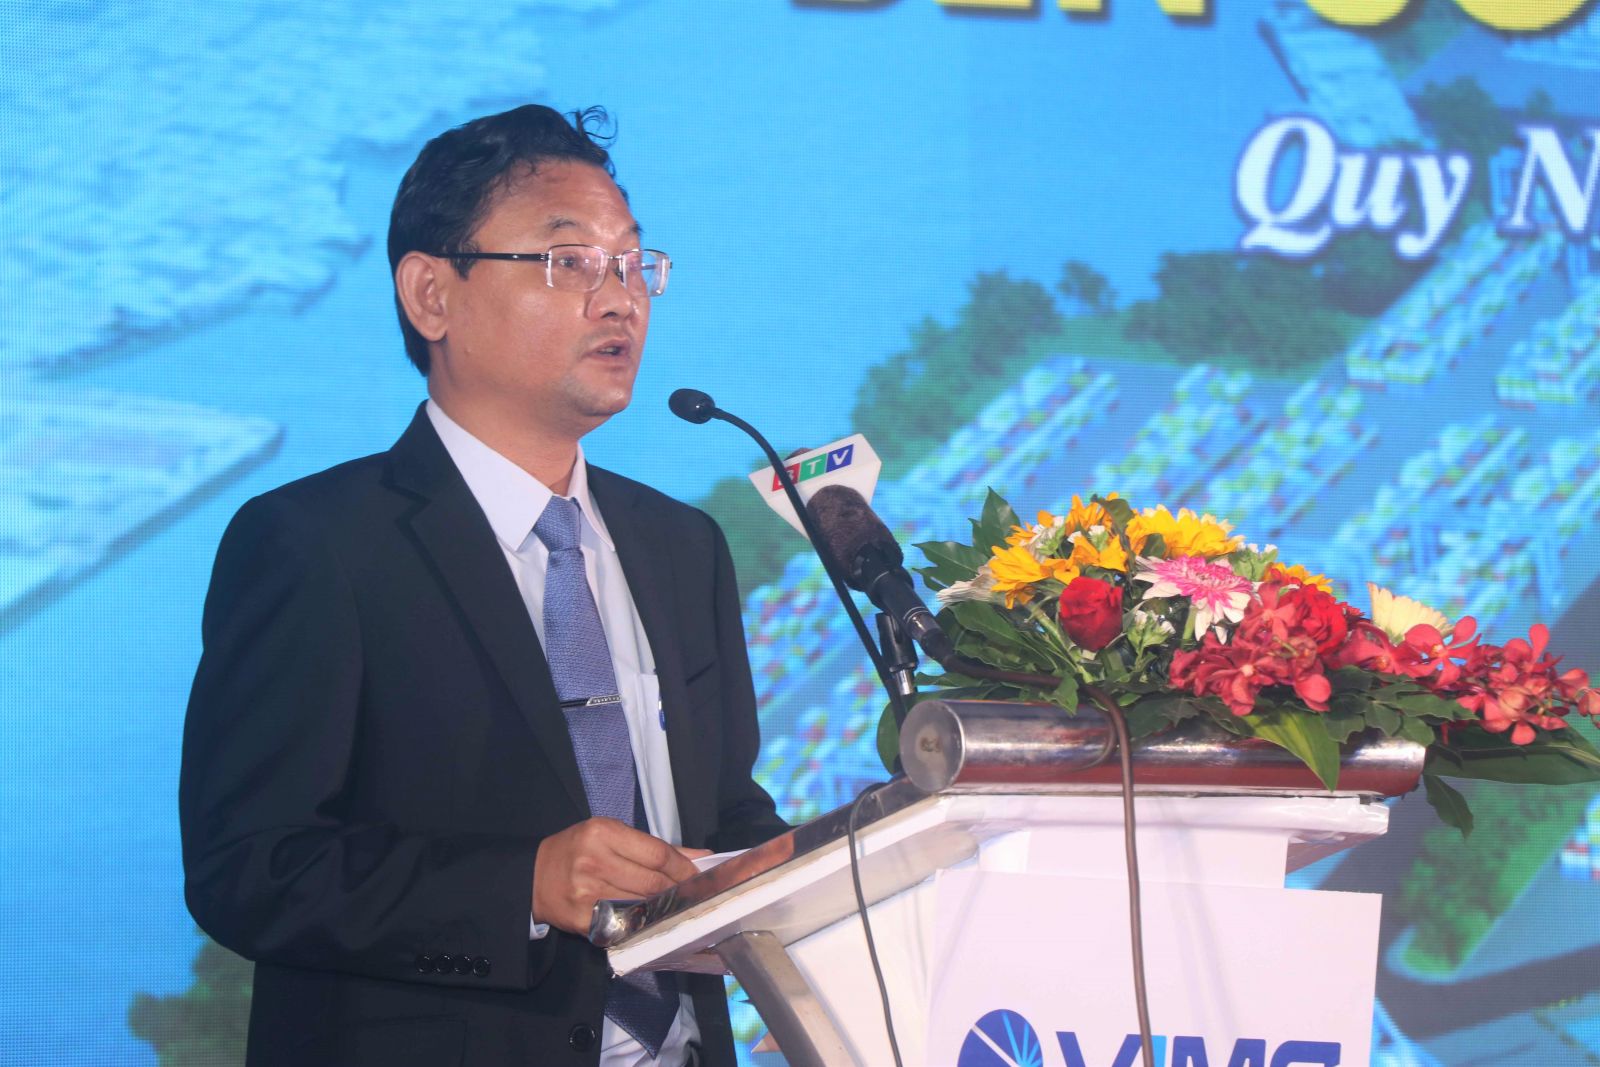 Phó Chủ tịch UBND tỉnh Bình Định; Nguyễn Tự Công Hoàng đến dự và phát biểu tại buổi lễ.